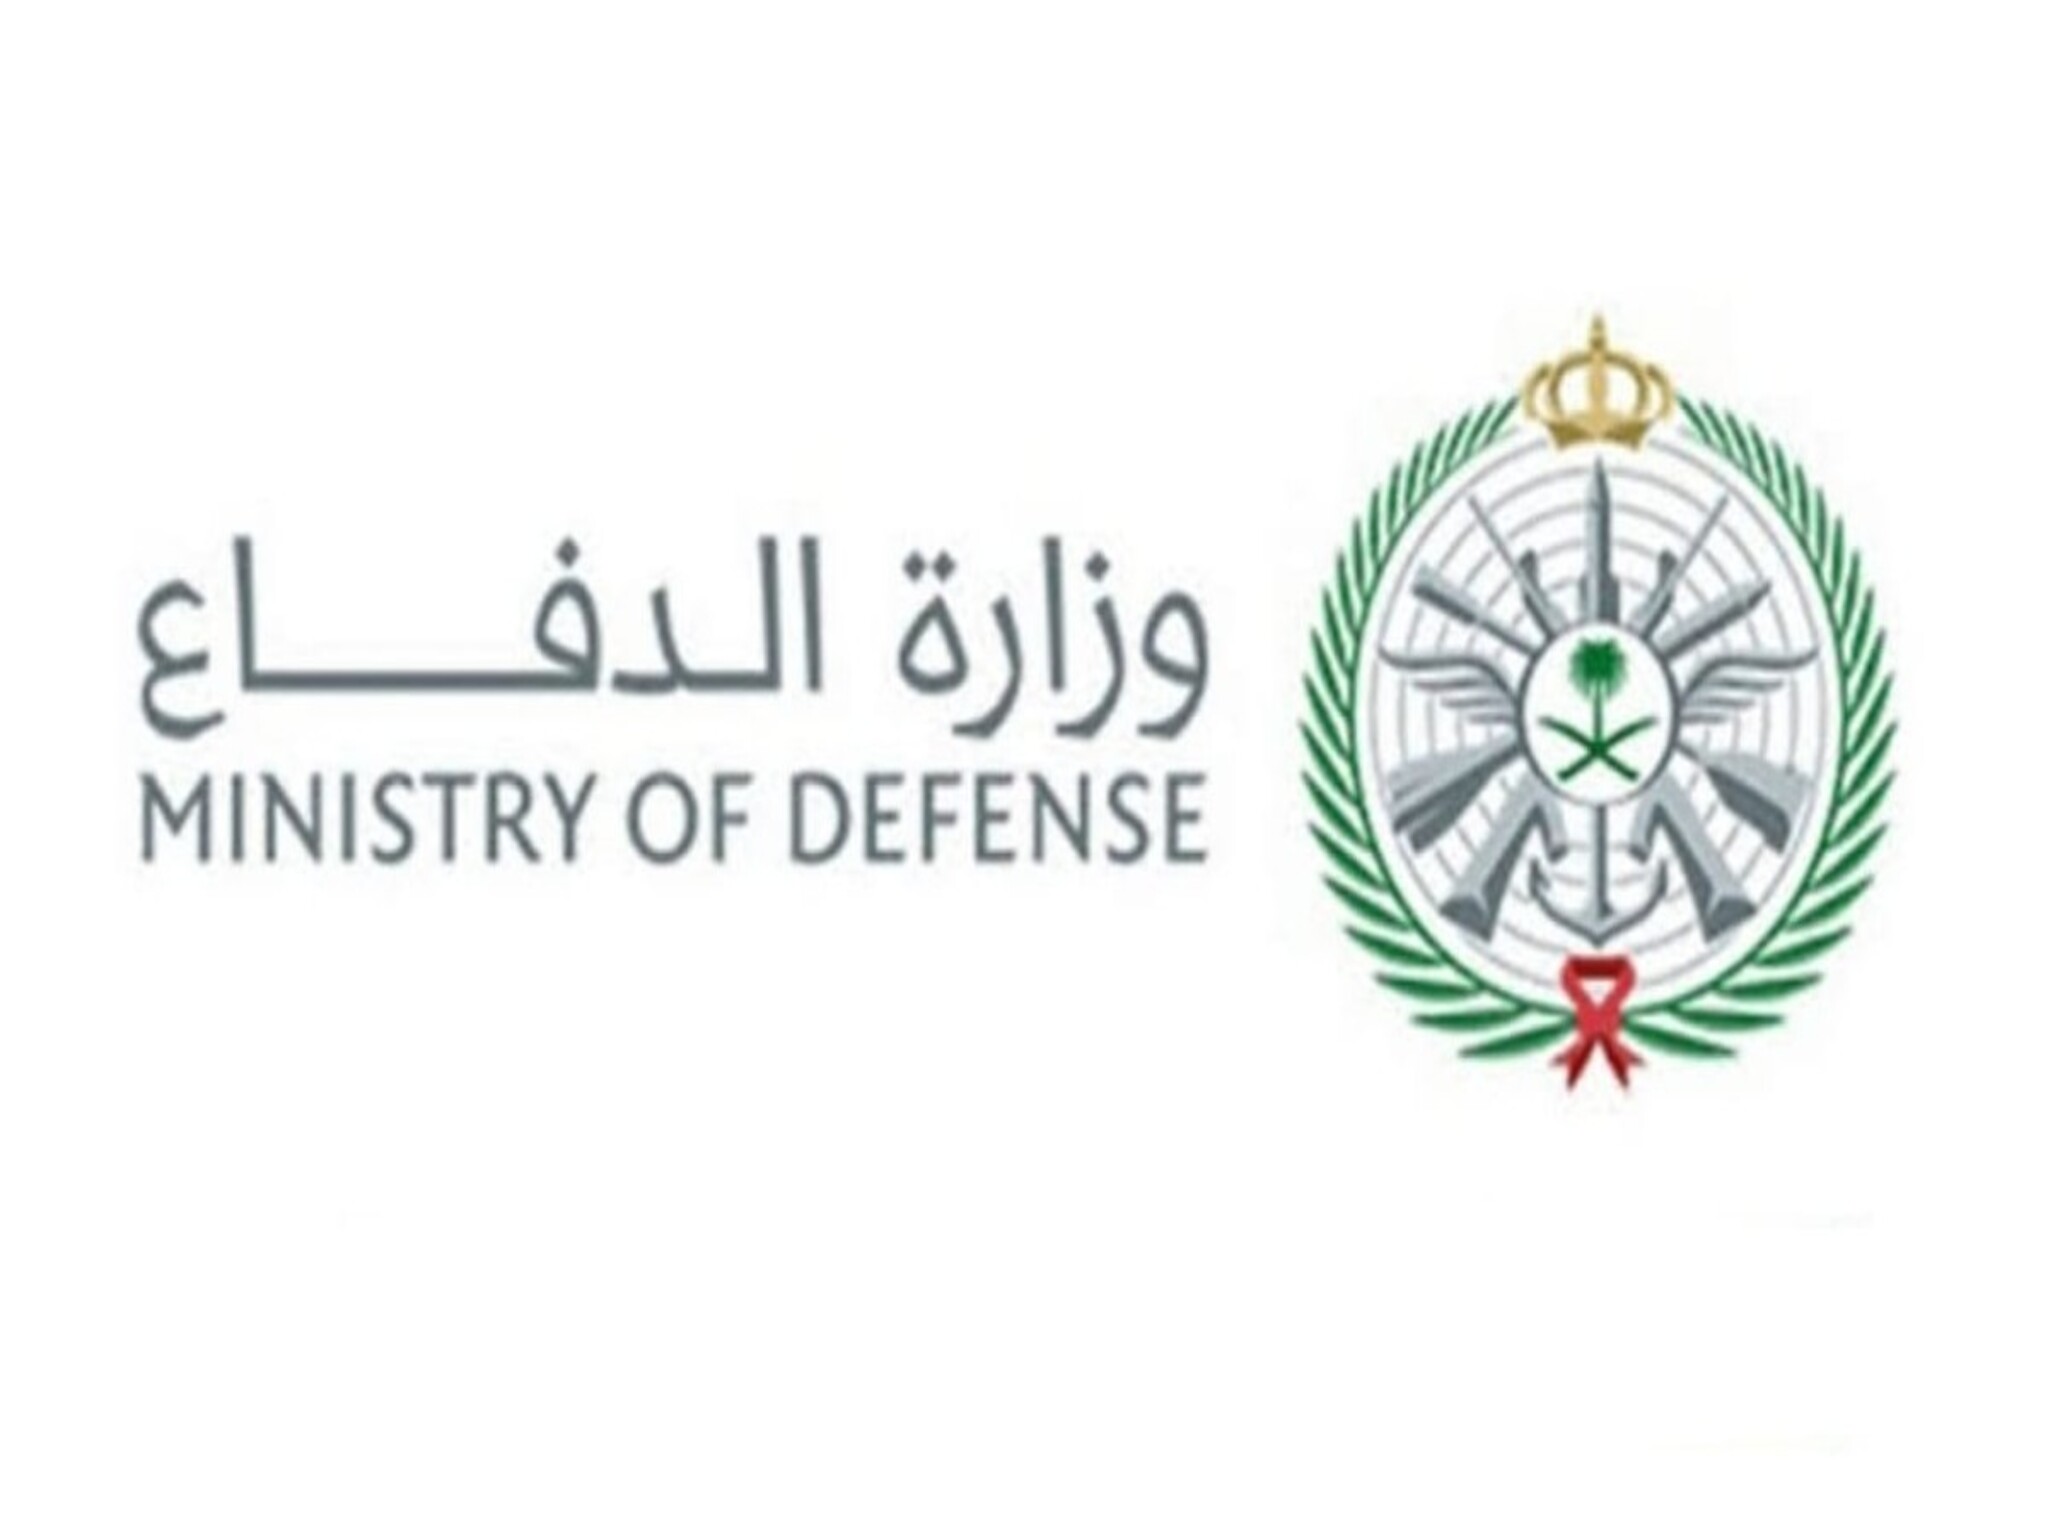 وزارة الدفاع تعلن عن فتح باب القبول في التجنيد الموحد على 5 رتب 1445هـ